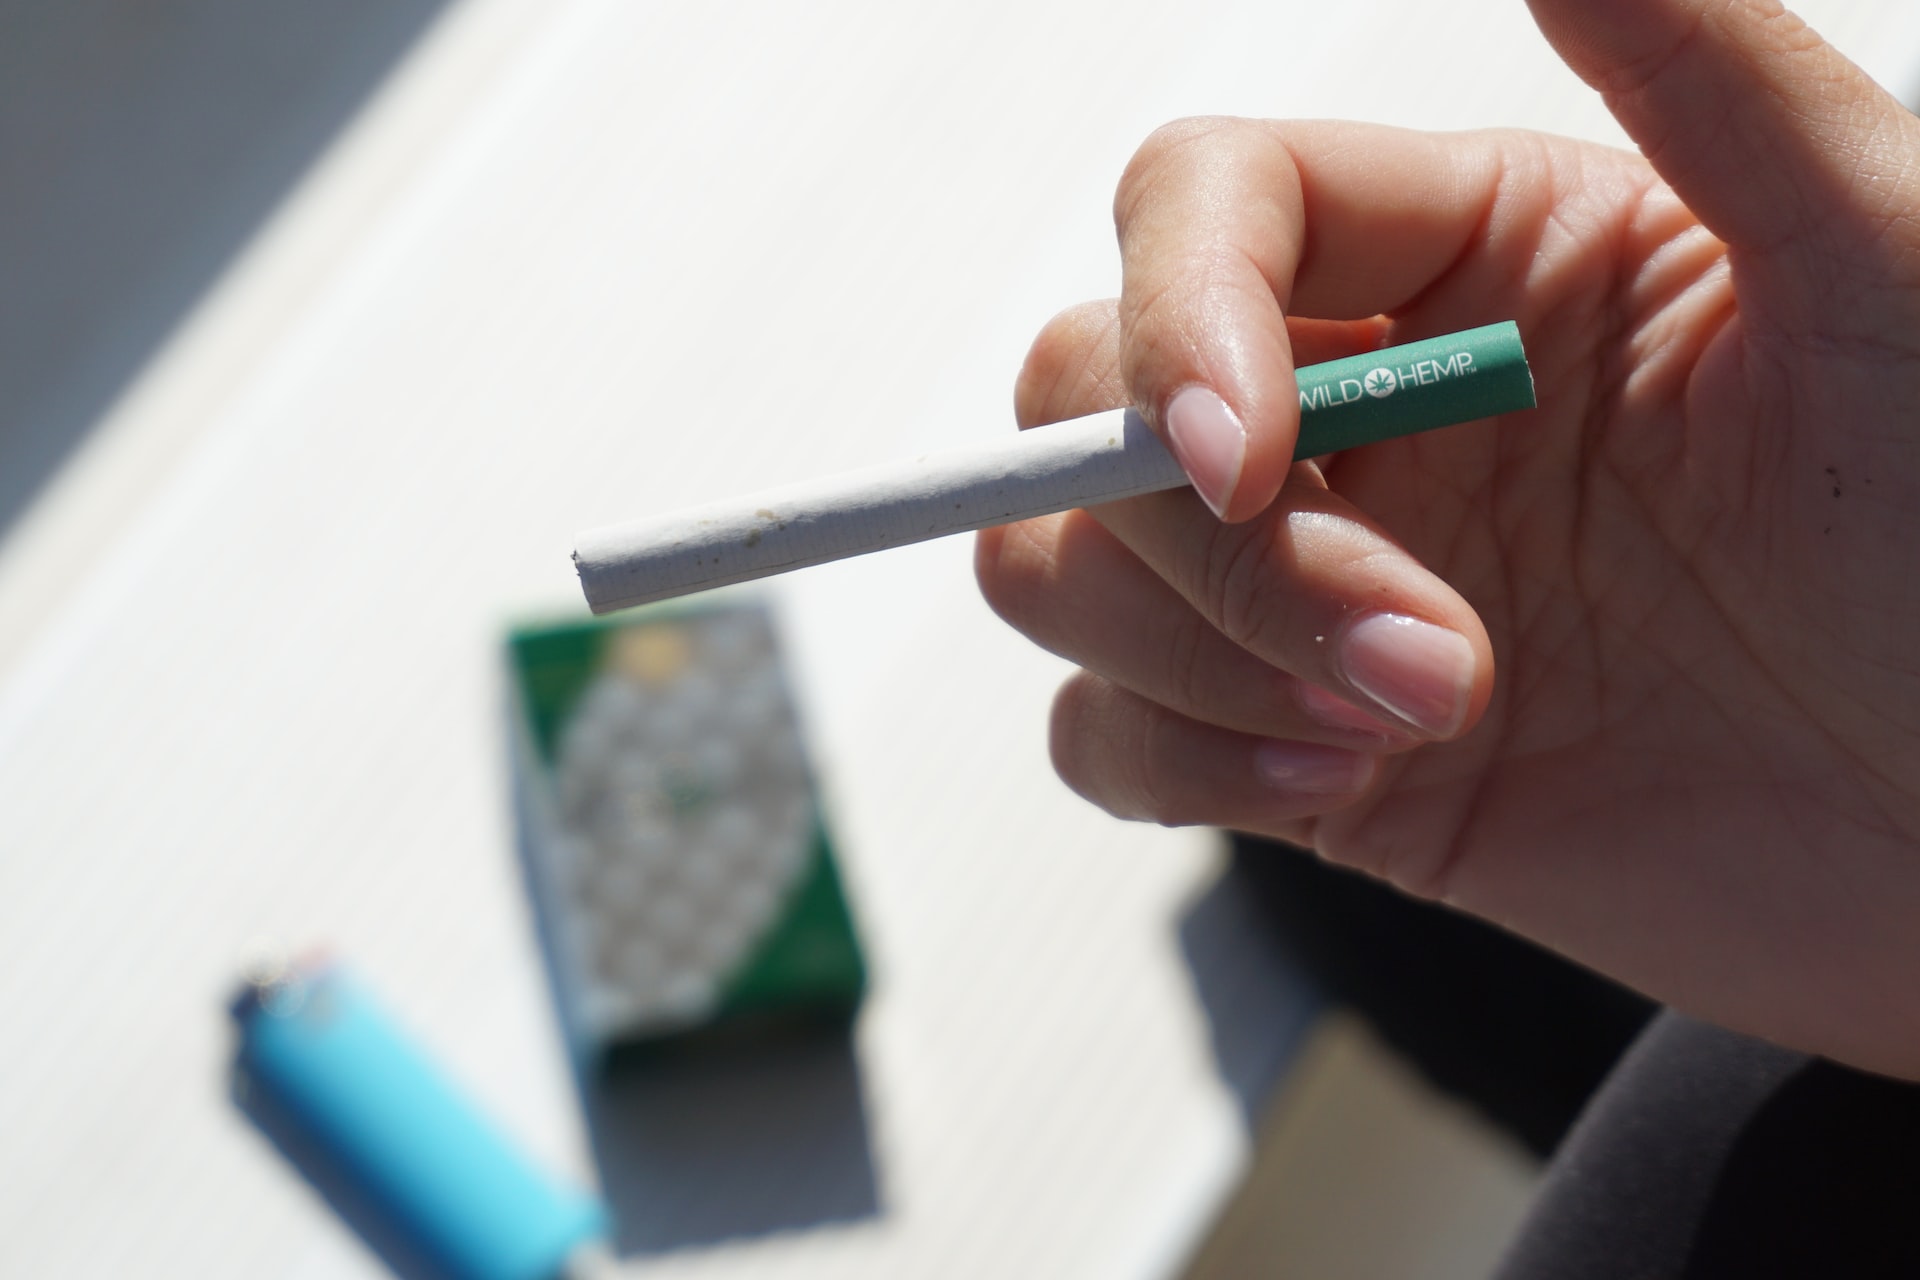 Η Νέα Ζηλανδία ψηφίζει νόμο που απαγορεύει τα τσιγάρα για τις μελλοντικές γενιές